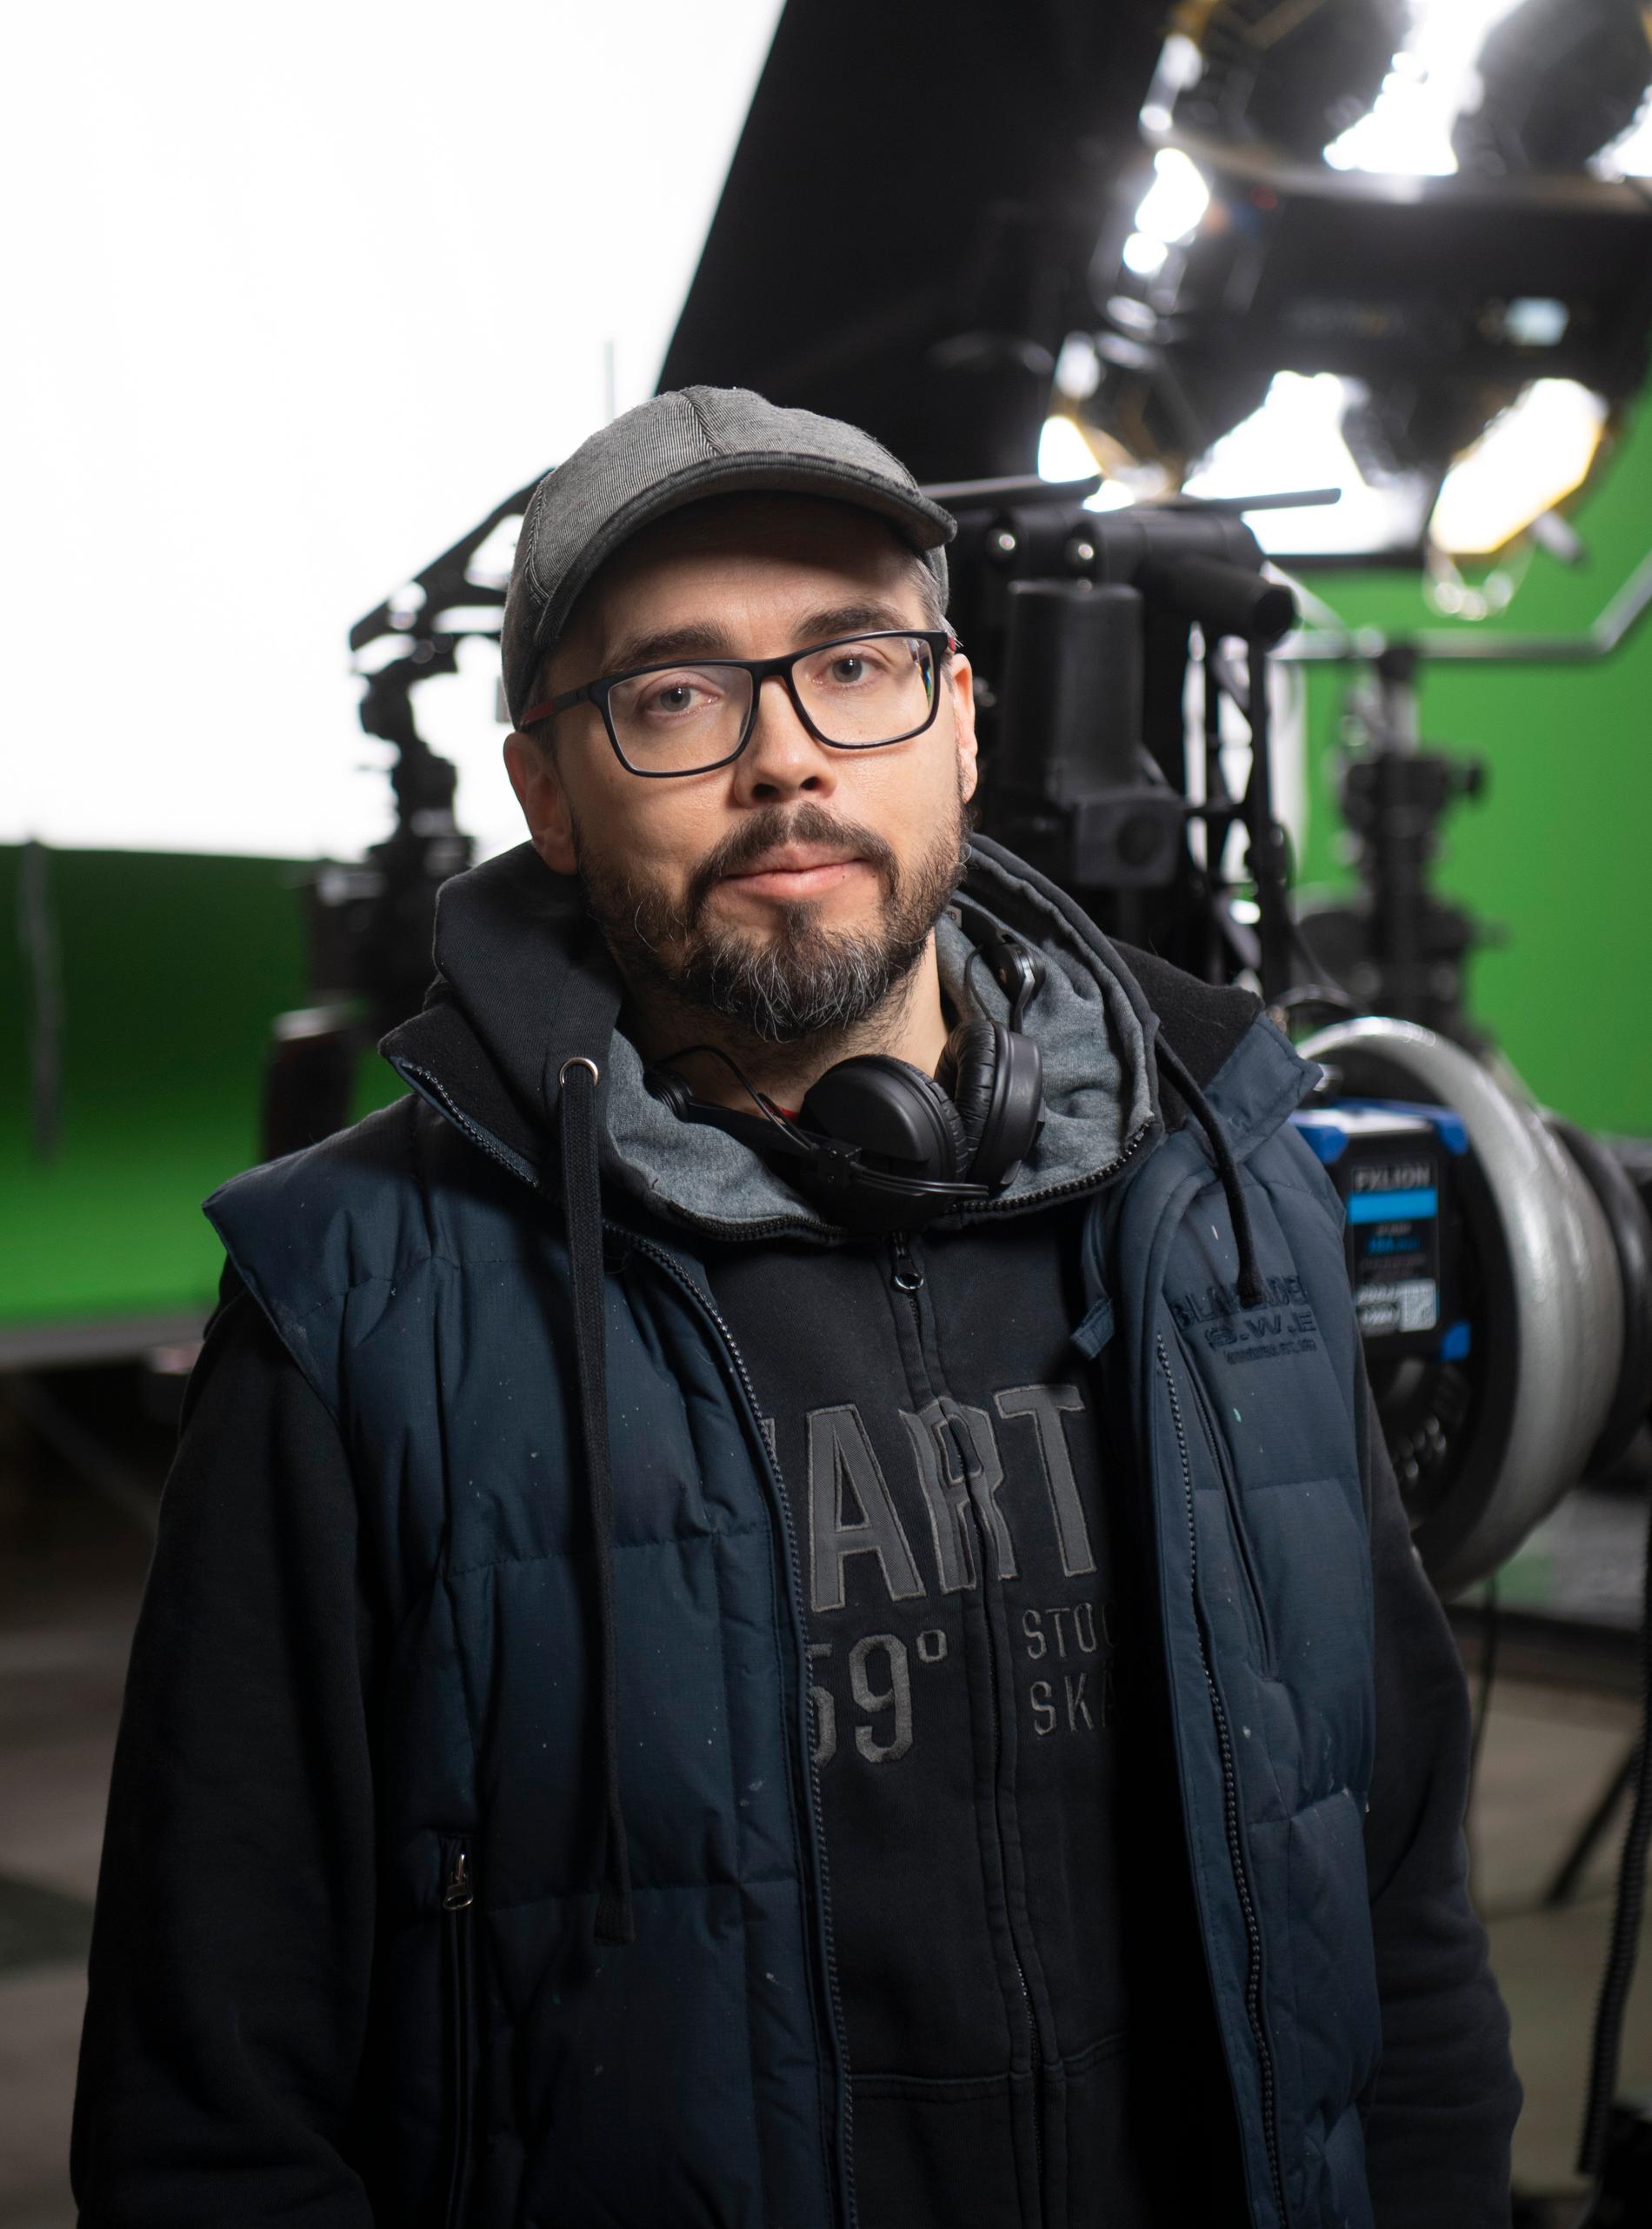 Regissör Tord Danielsson gillar att skapa verklighetsflykt. Han har tidigare regisserat science fiction-kalendern "Jakten på tidskristallen" från 2017.